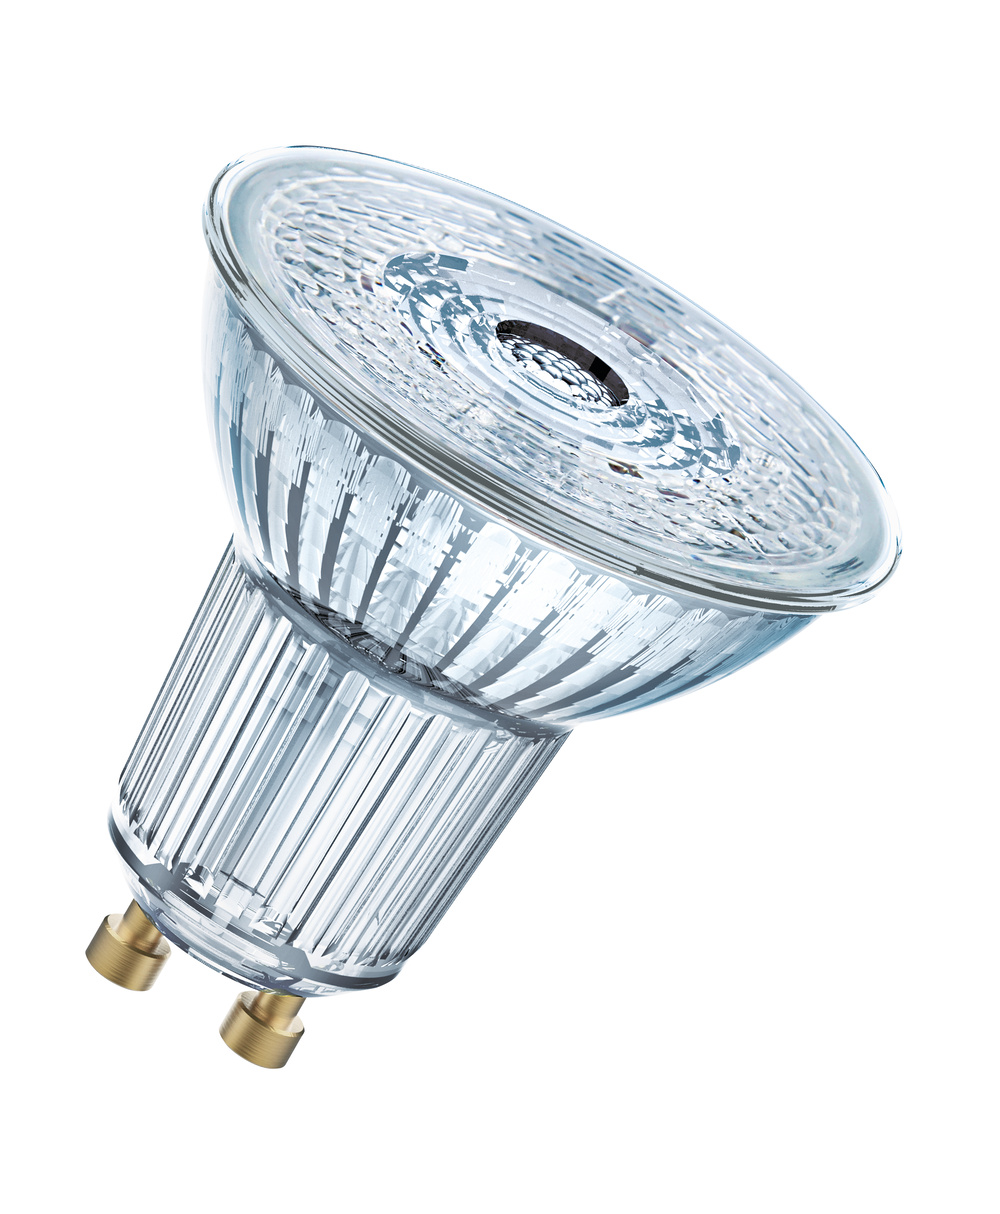 Ledvance LED lamp LED PAR16 DIM P 8.3W 927 GU10 – 4099854059117 – replacement for 80 W